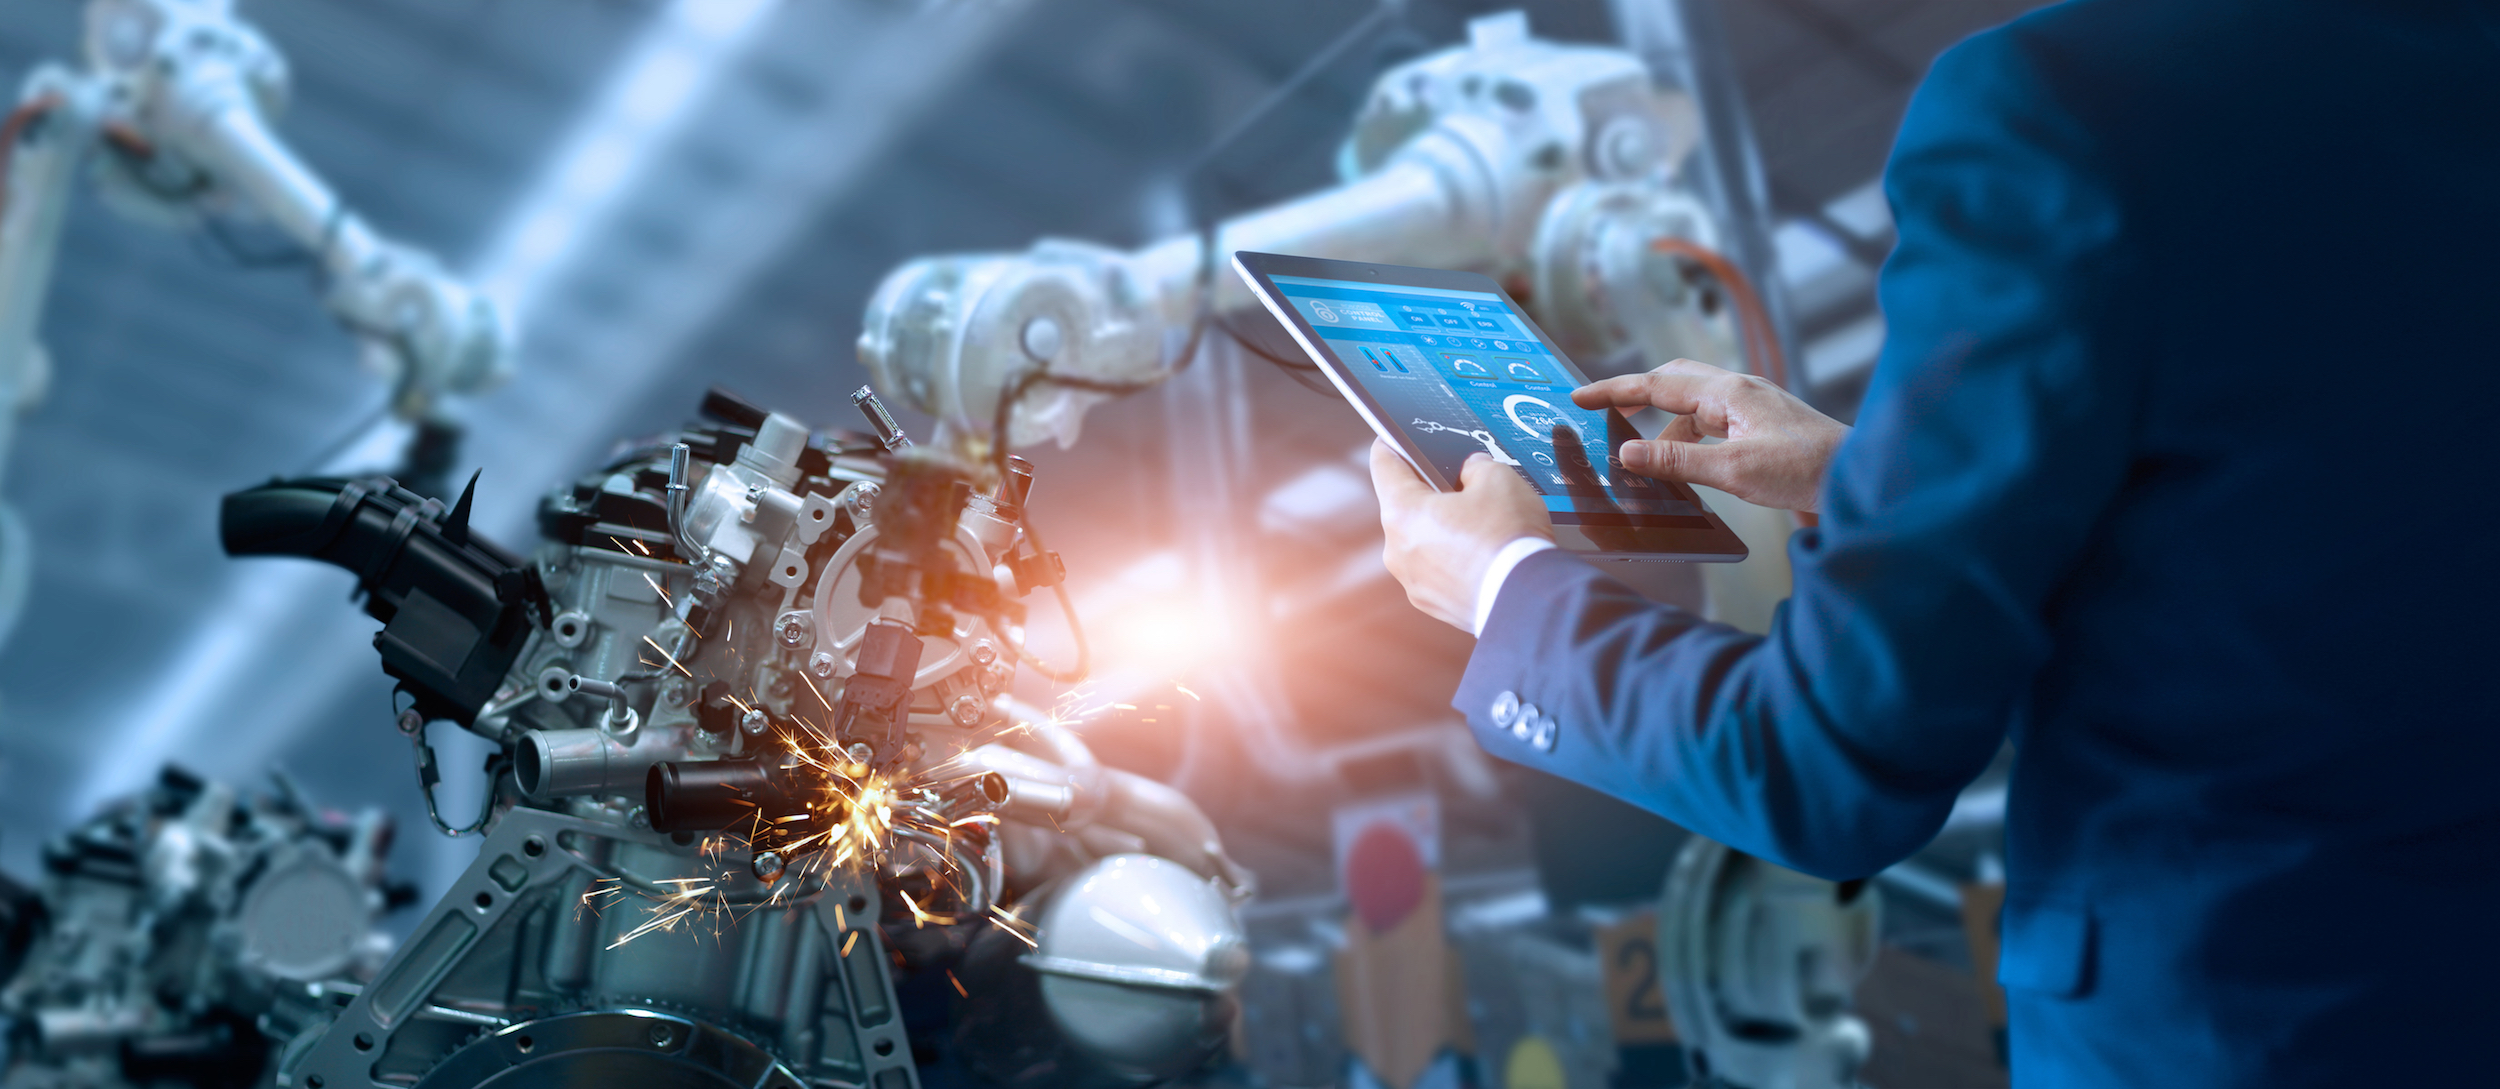 Układy i systemy automatyki znajdziemy dziś w prawie wszystkich dziedzinach życia, zwłaszcza w gospodarce, przemyśle i nauce (fot. Shutterstock)